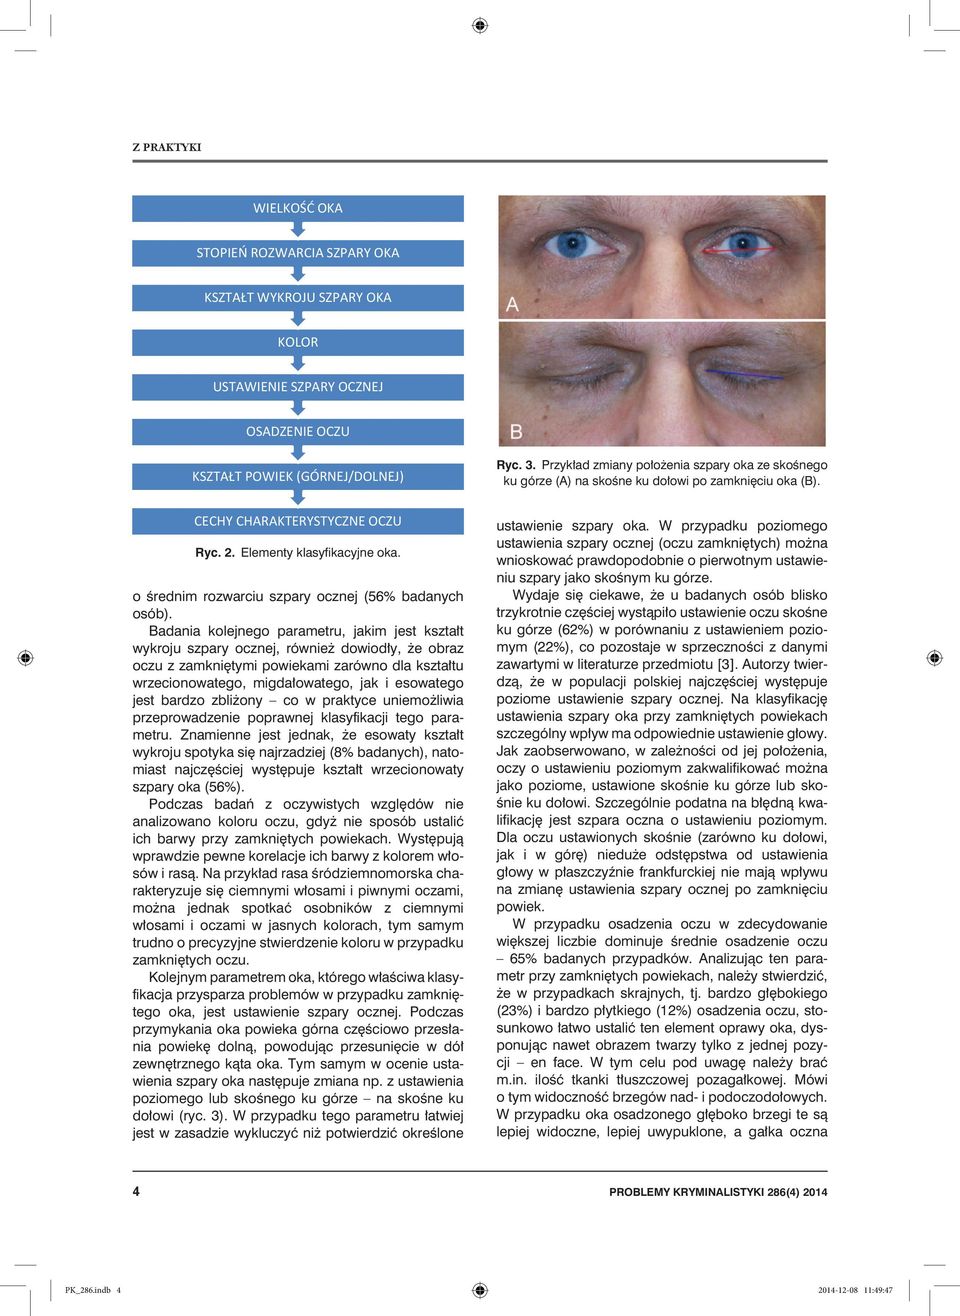 Badania kolejnego parametru, jakim jest kształt wykroju szpary ocznej, również dowiodły, że obraz oczu z zamkniętymi powiekami zarówno dla kształtu wrzecionowatego, migdałowatego, jak i esowatego